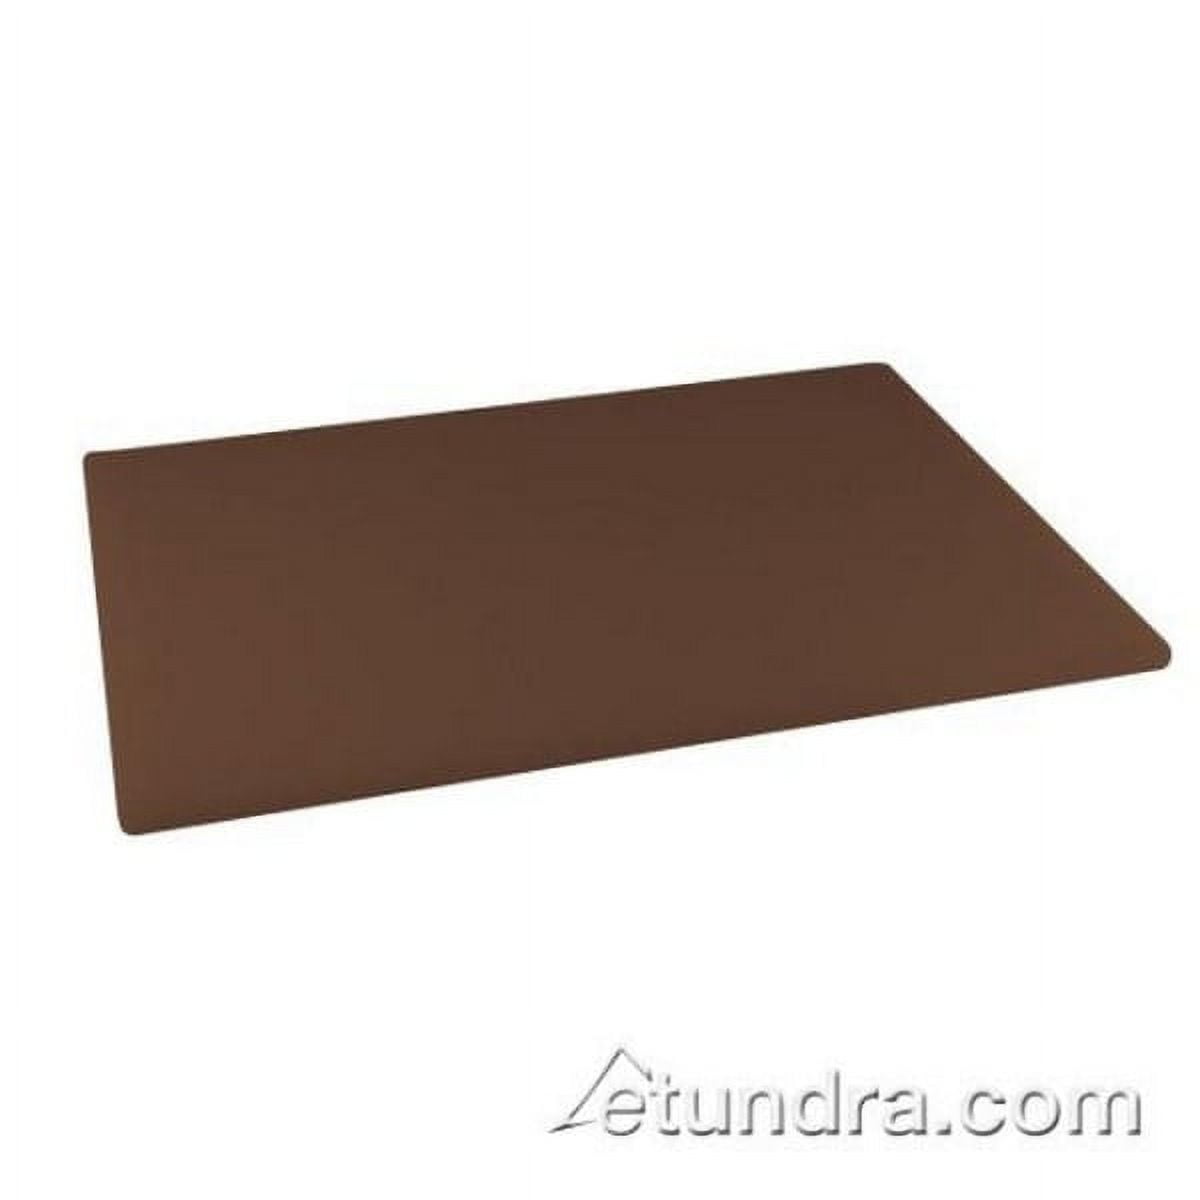 Winco WCB-1218 Wooden Cutting Board, 12-Inch x 18-Inch x 1.75-Inch